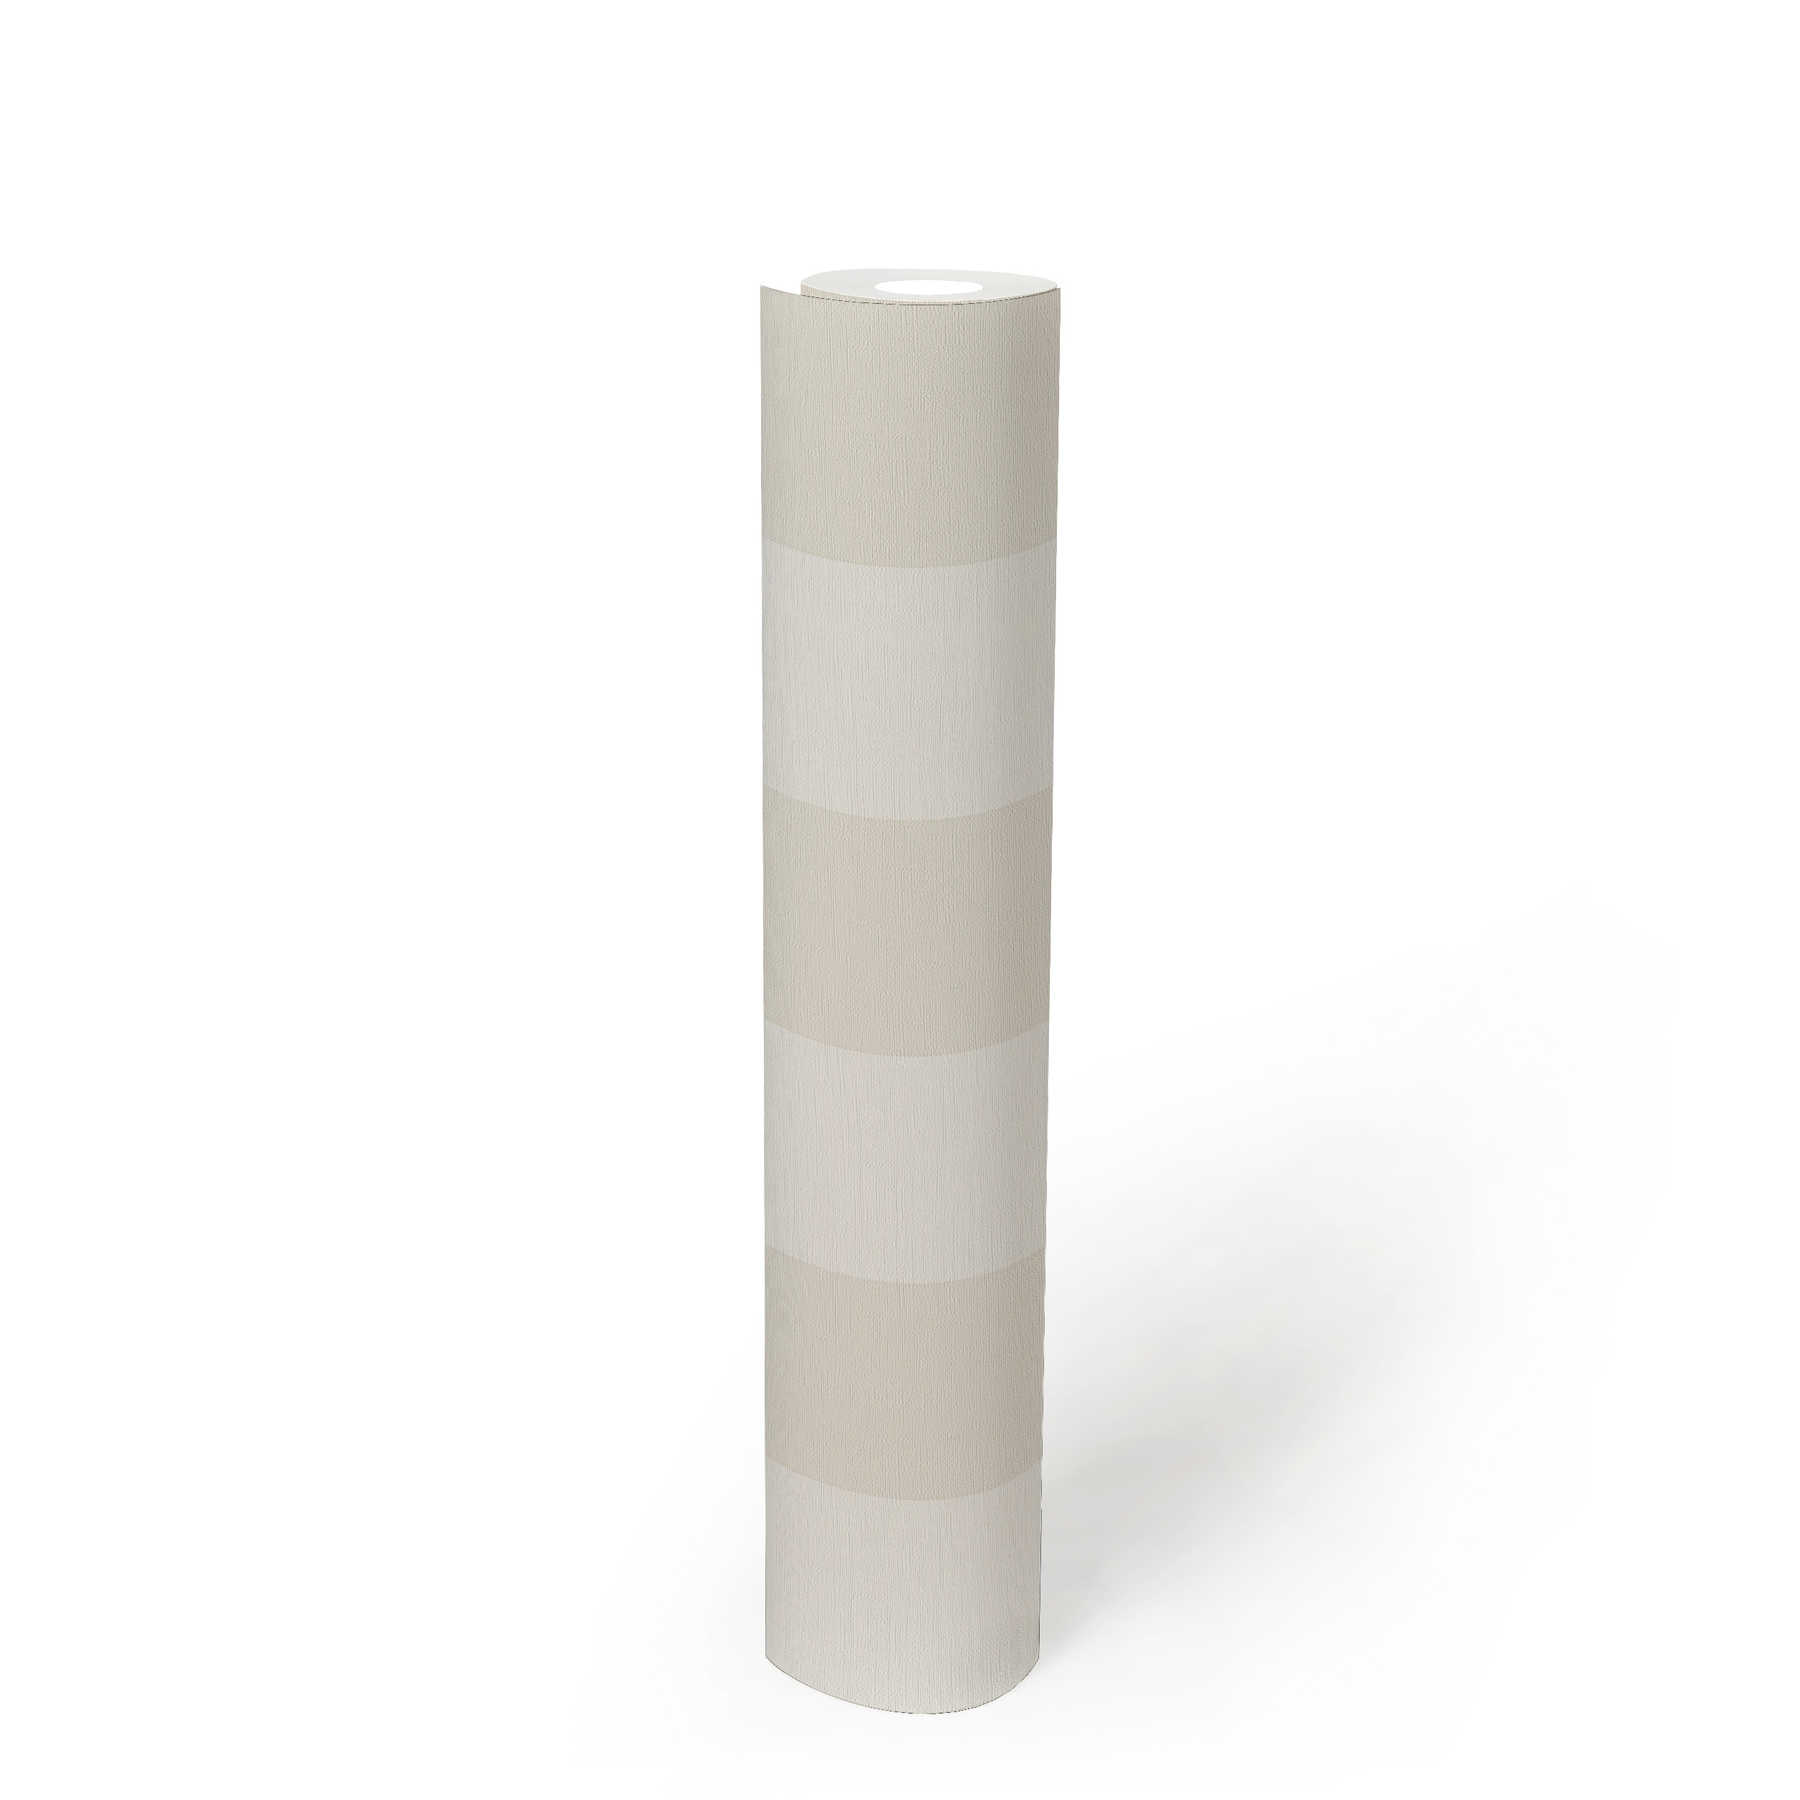             Papier peint à rayures en bloc avec aspect textile pour un design jeune - beige, blanc
        